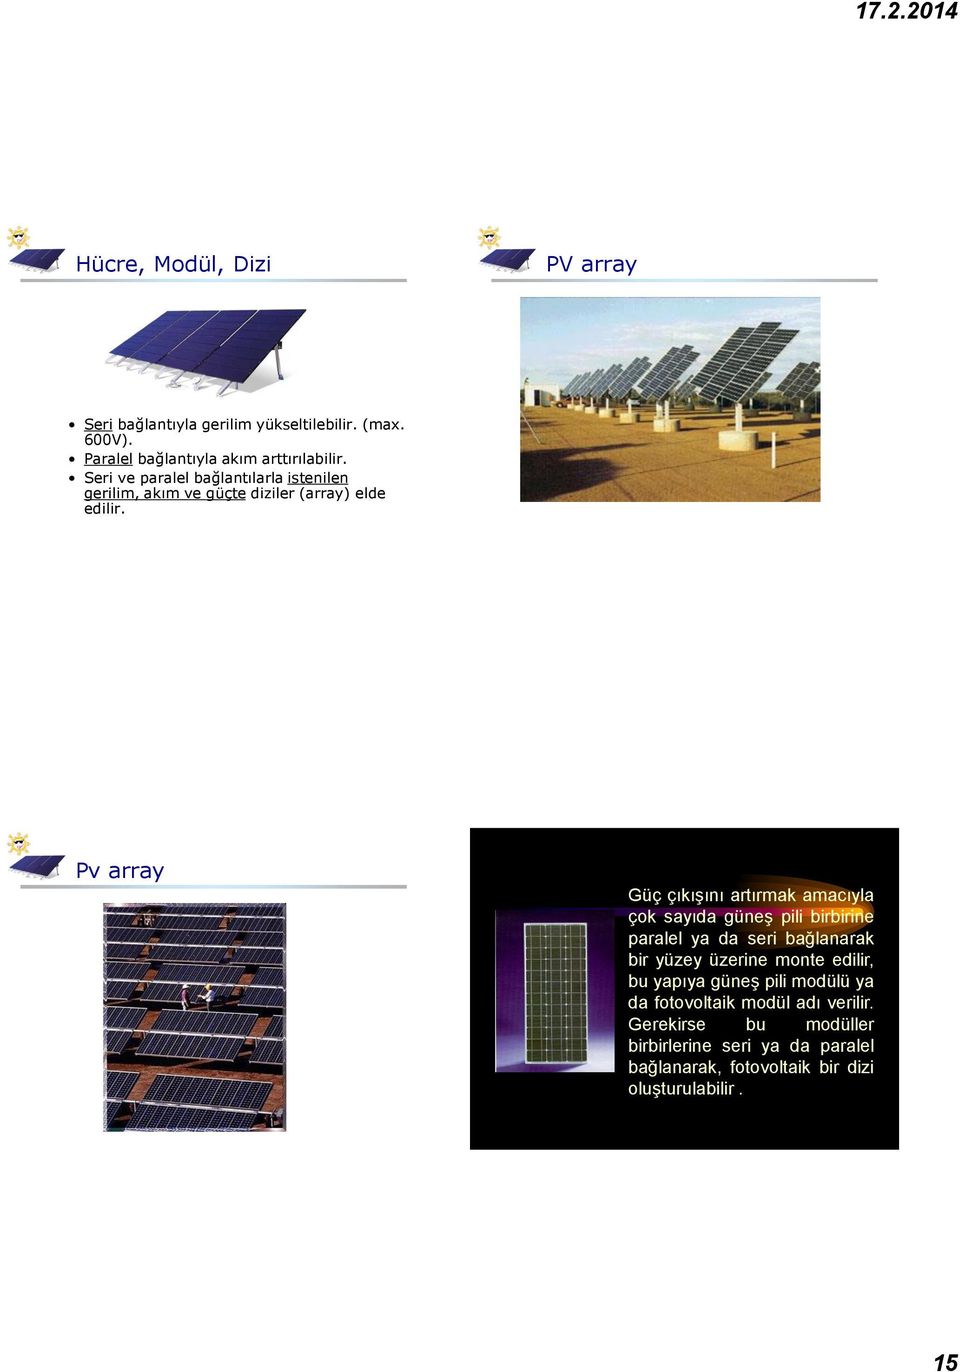 Pv array Güç çıkışını artırmak amacıyla çok sayıda güneş pili birbirine paralel ya da seri bağlanarak bir yüzey üzerine monte